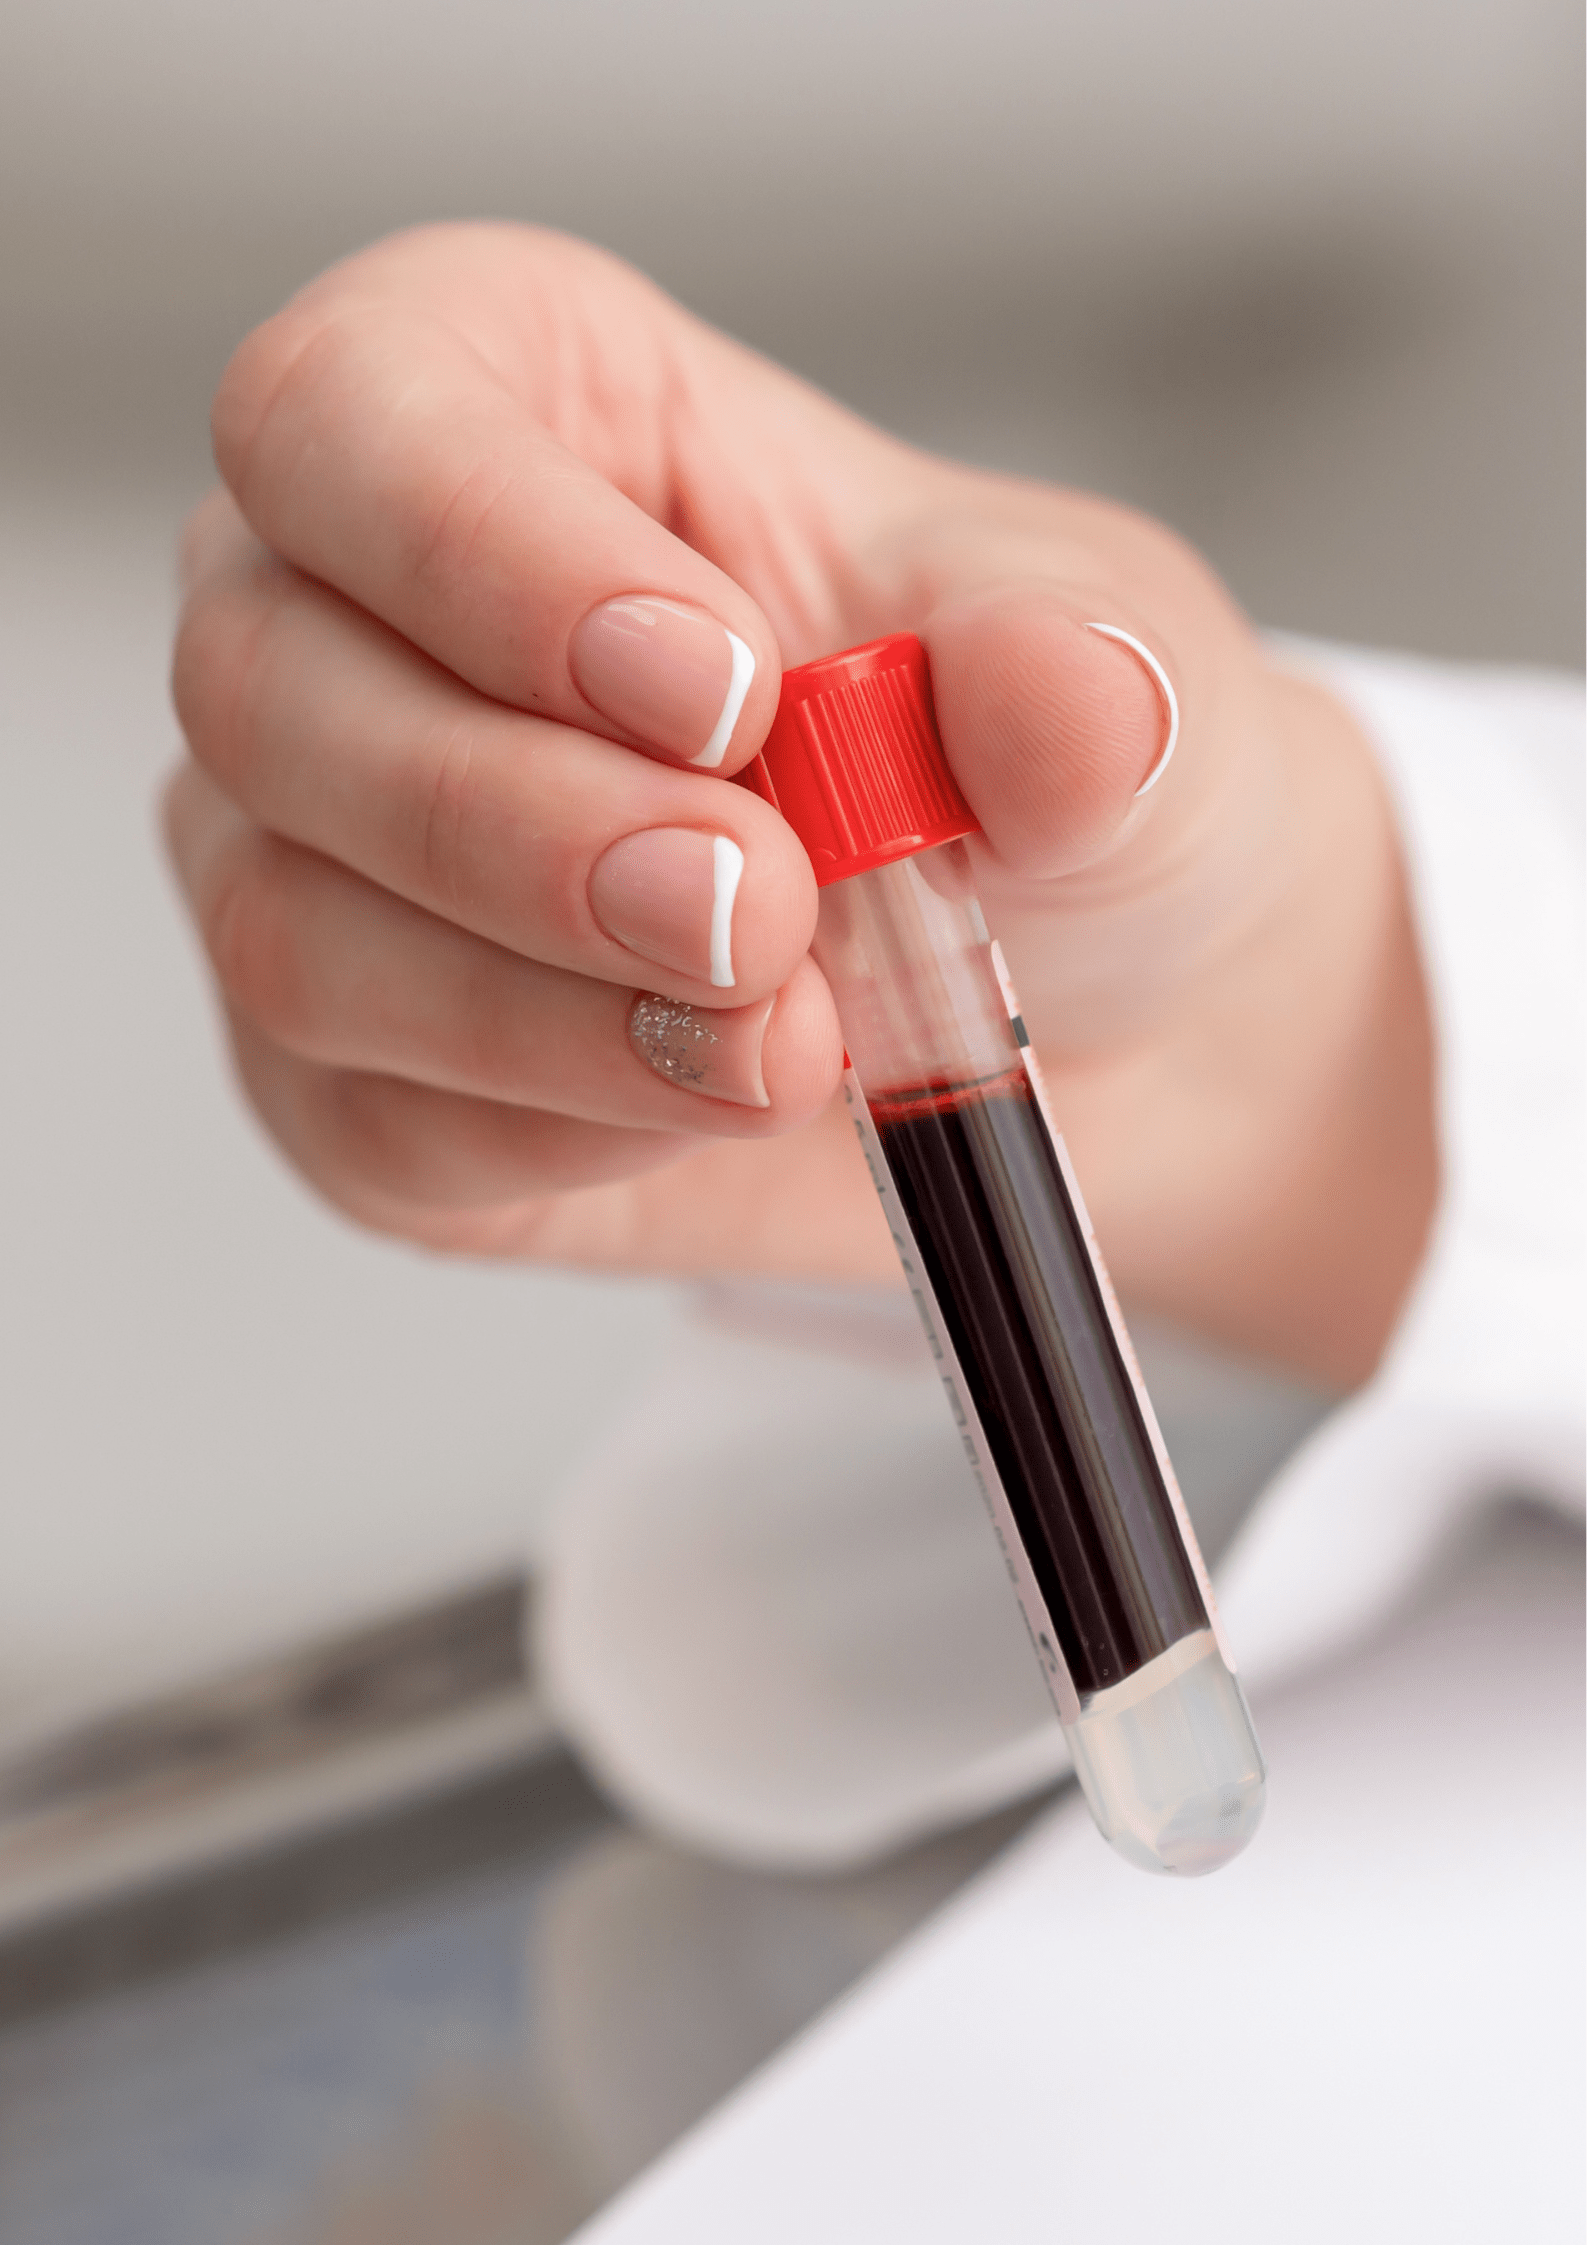 Ceban HomeCare - LRC erkend vaccinatiebureau - bloedprikken - bloedonderzoek - hepatitis B - titerbepaling - antistoffen - vaccinatieprogramma's